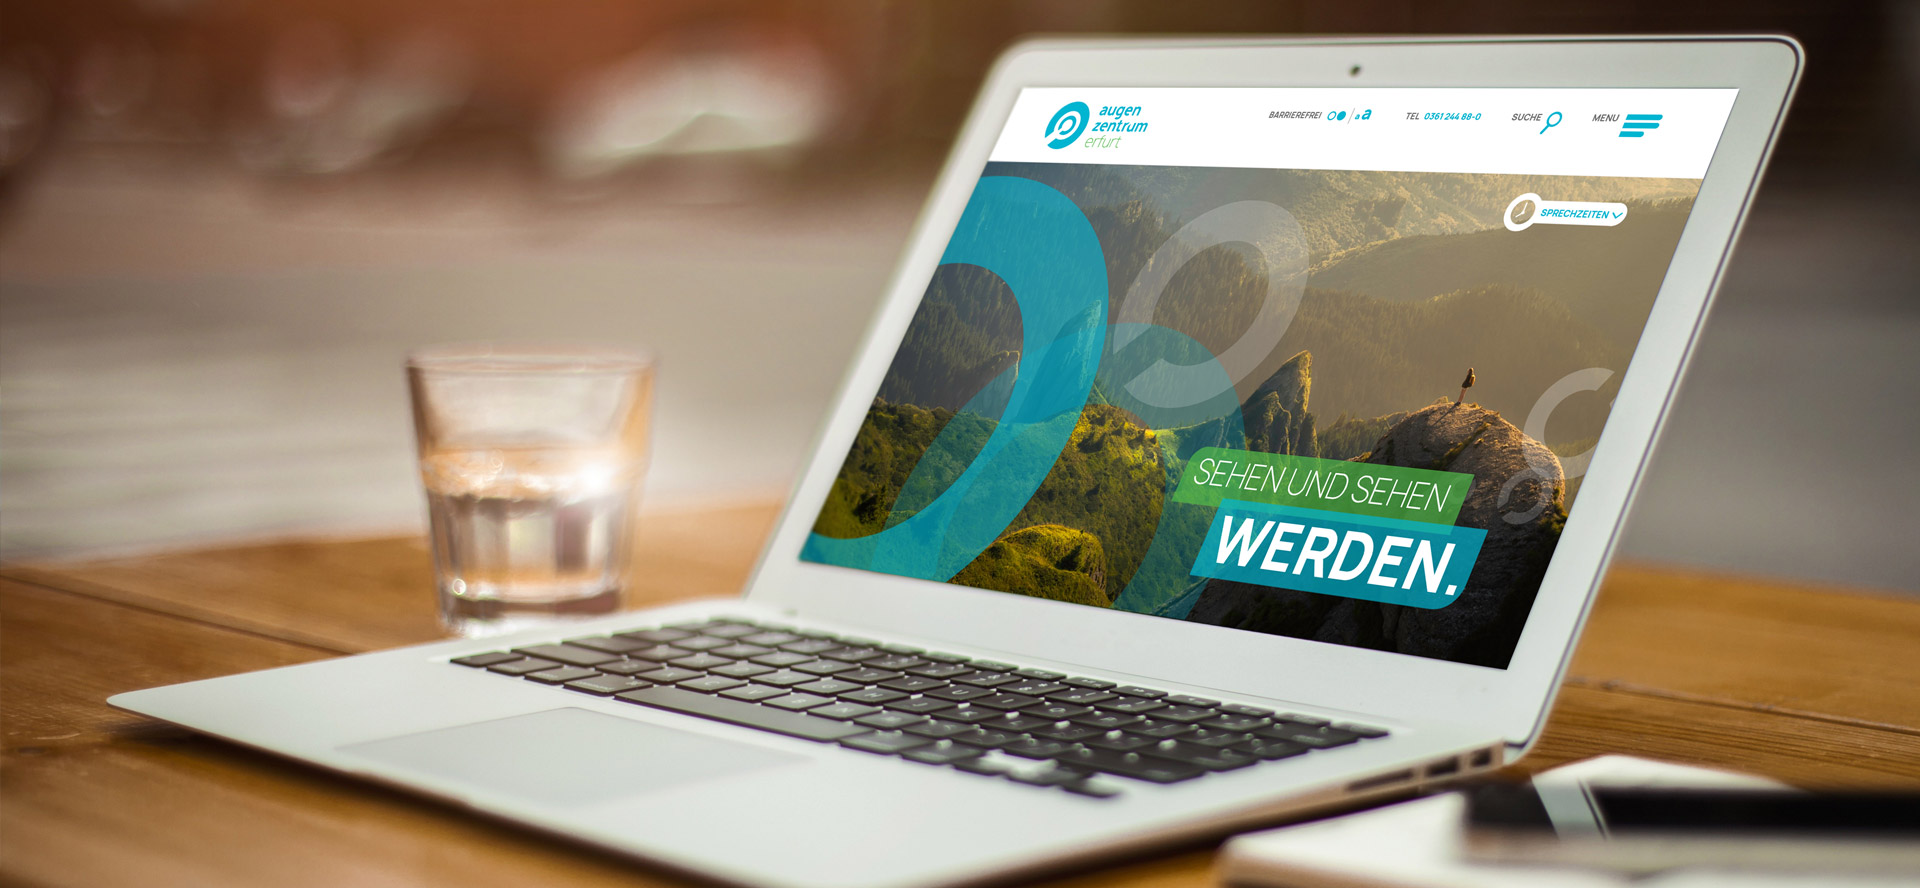 Aufgeklappter Laptop mit geöffneter Homepage der neuen Website des Augenzentrums Erfurt